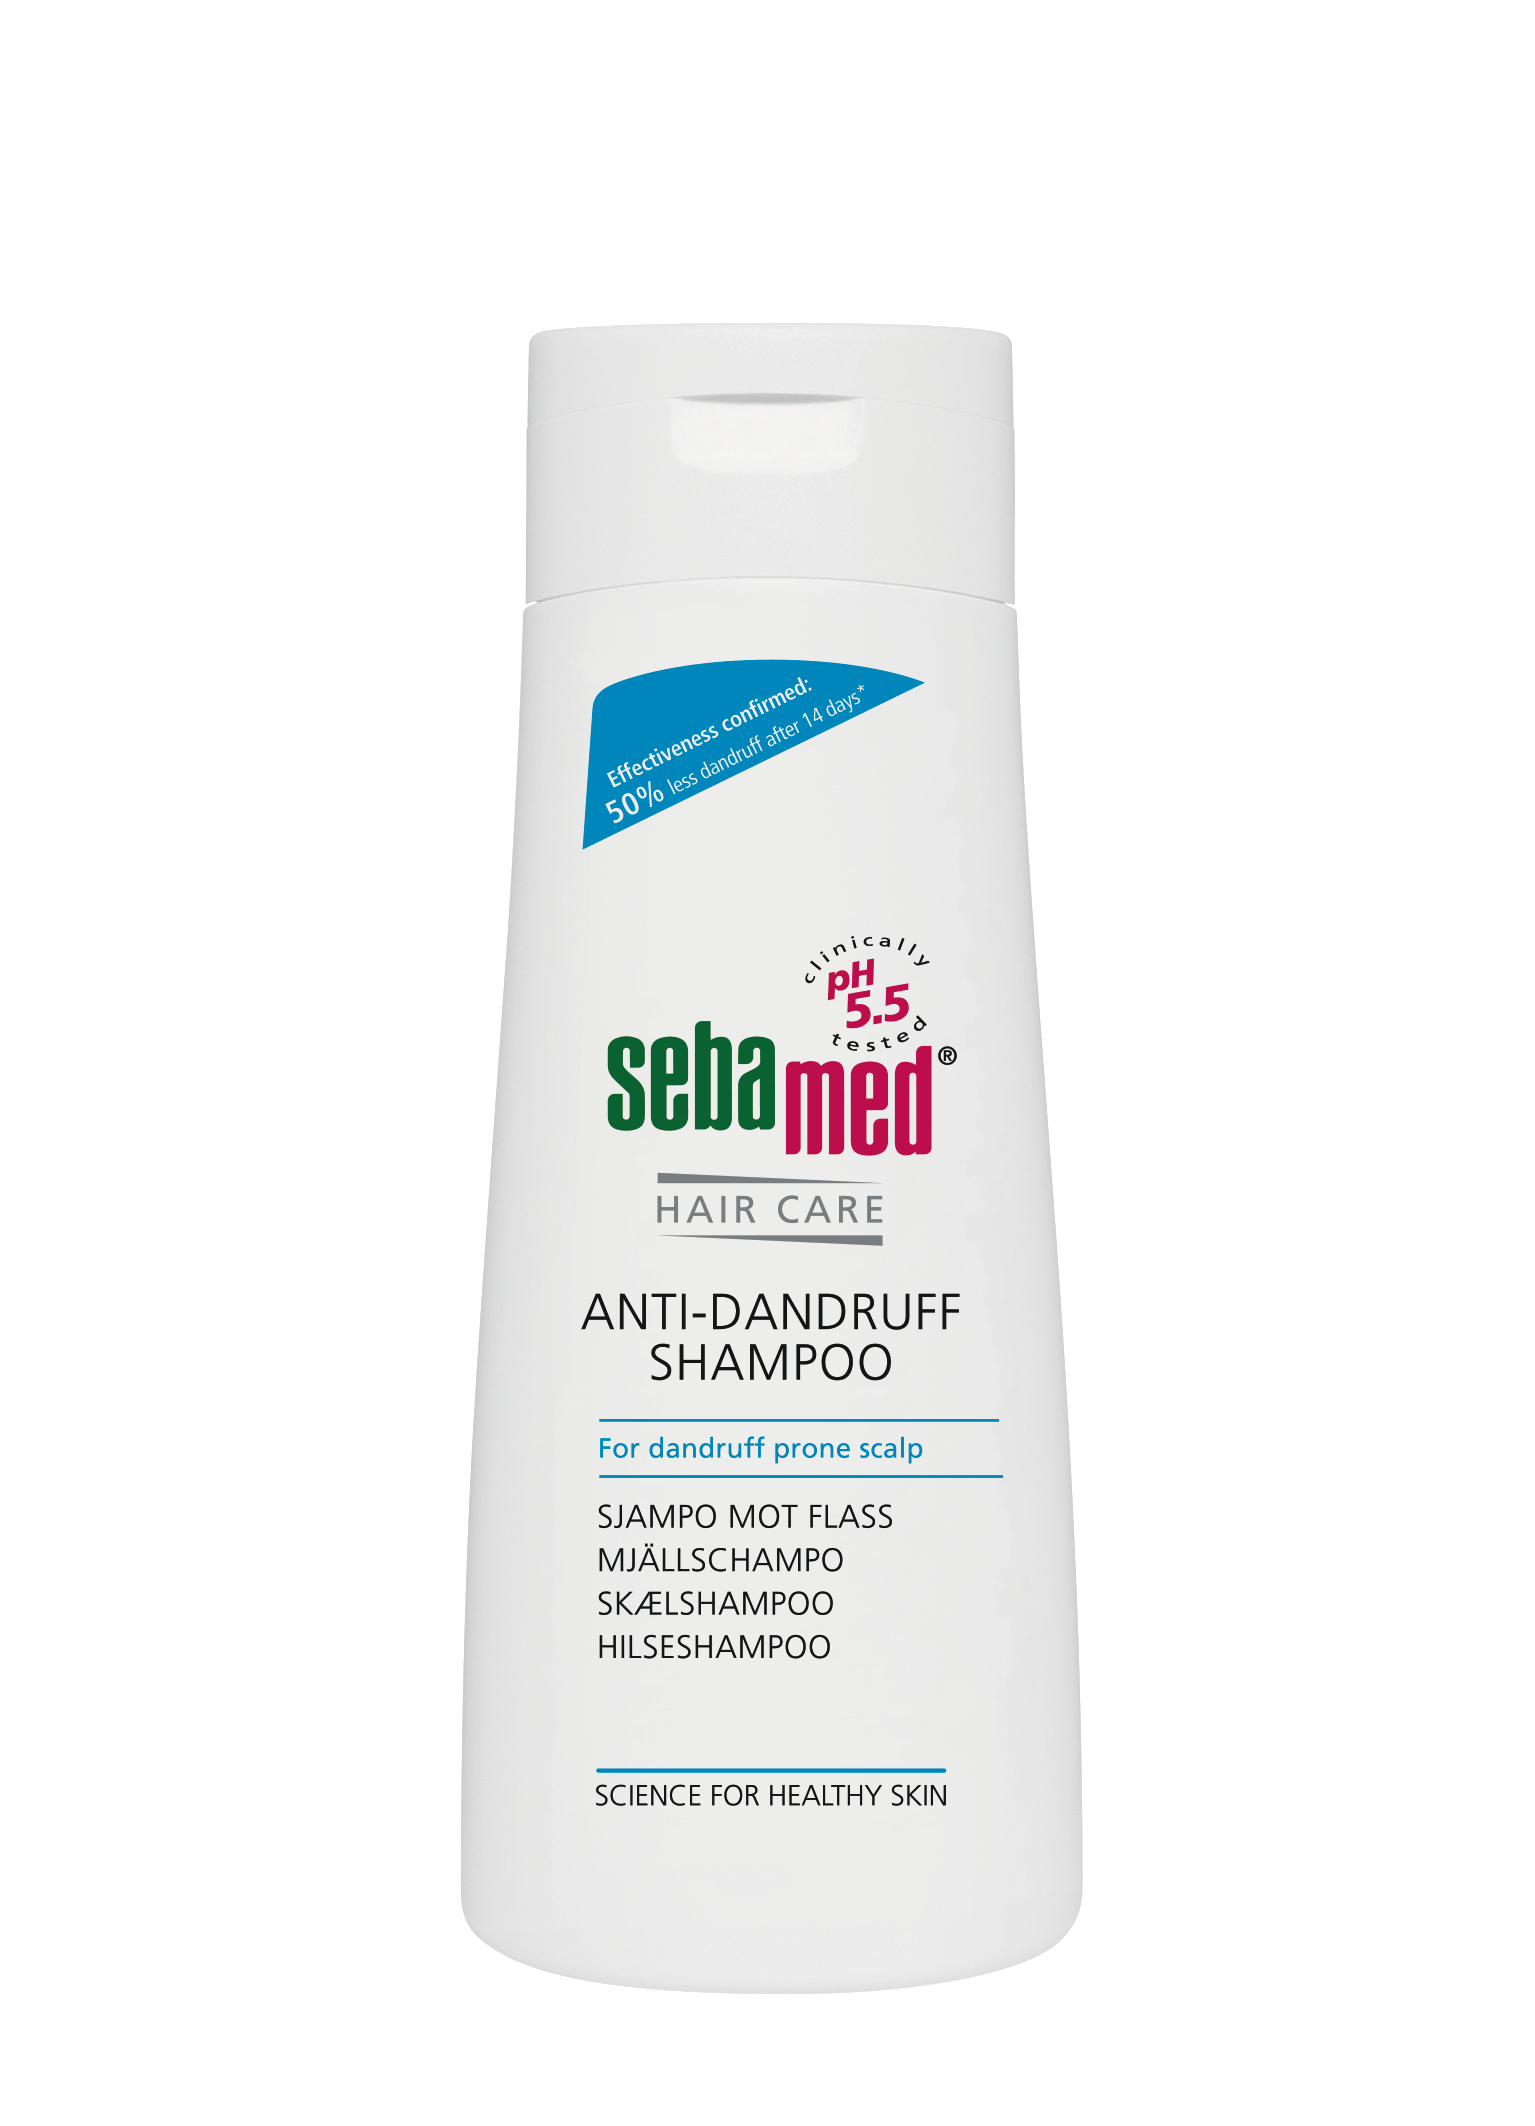 SebaMed Anti-Dandruff Shampoo, 200 ml